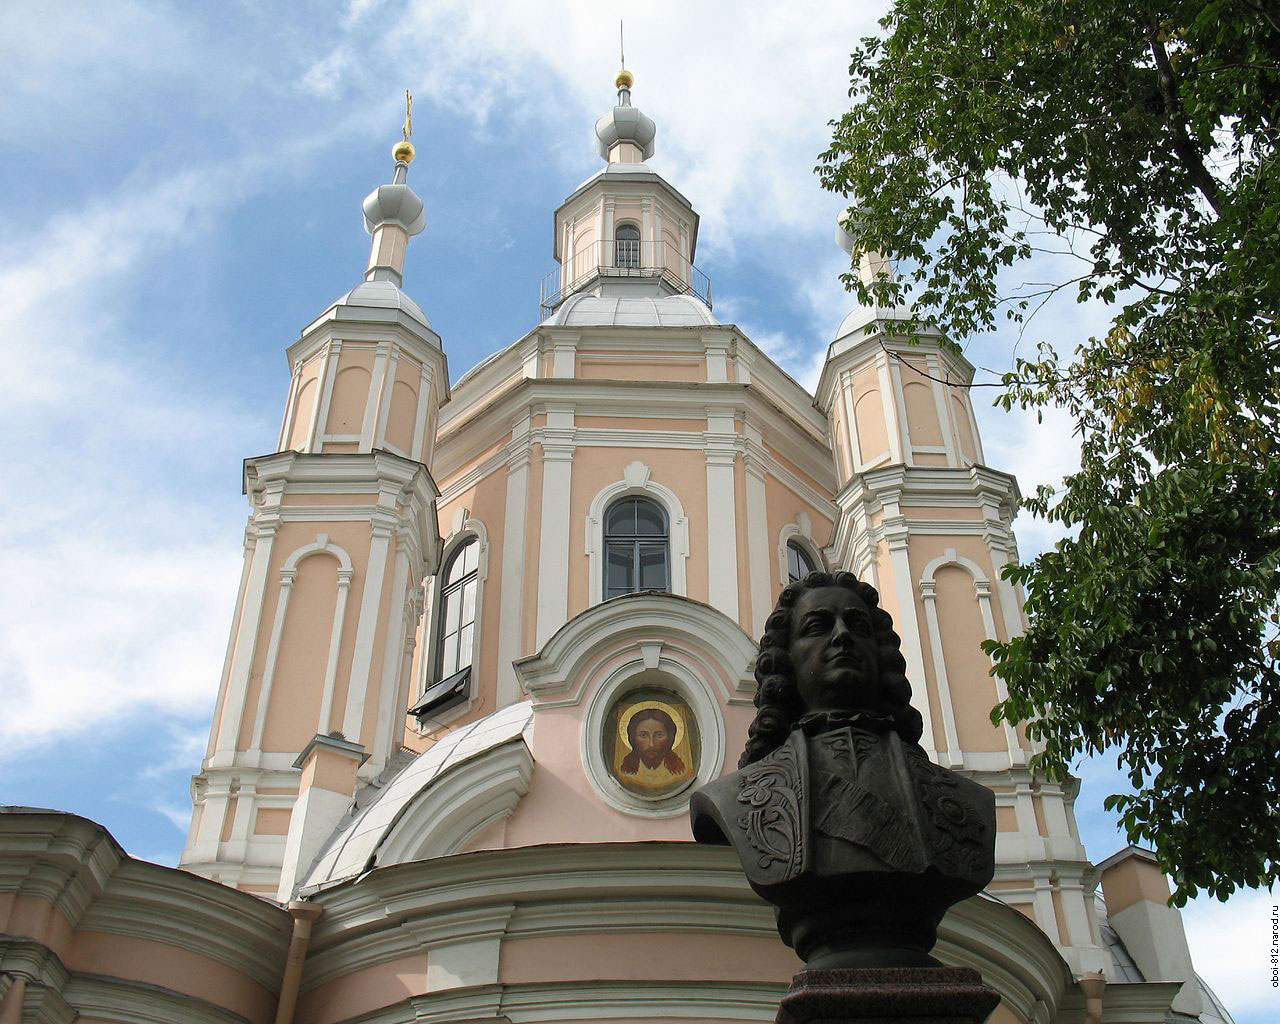 Андреевский собор в Санкт-Петербурге как фоновое изображение на рабочий стол, обои с видами Санкт-Петербурга, достопримечательности Питера